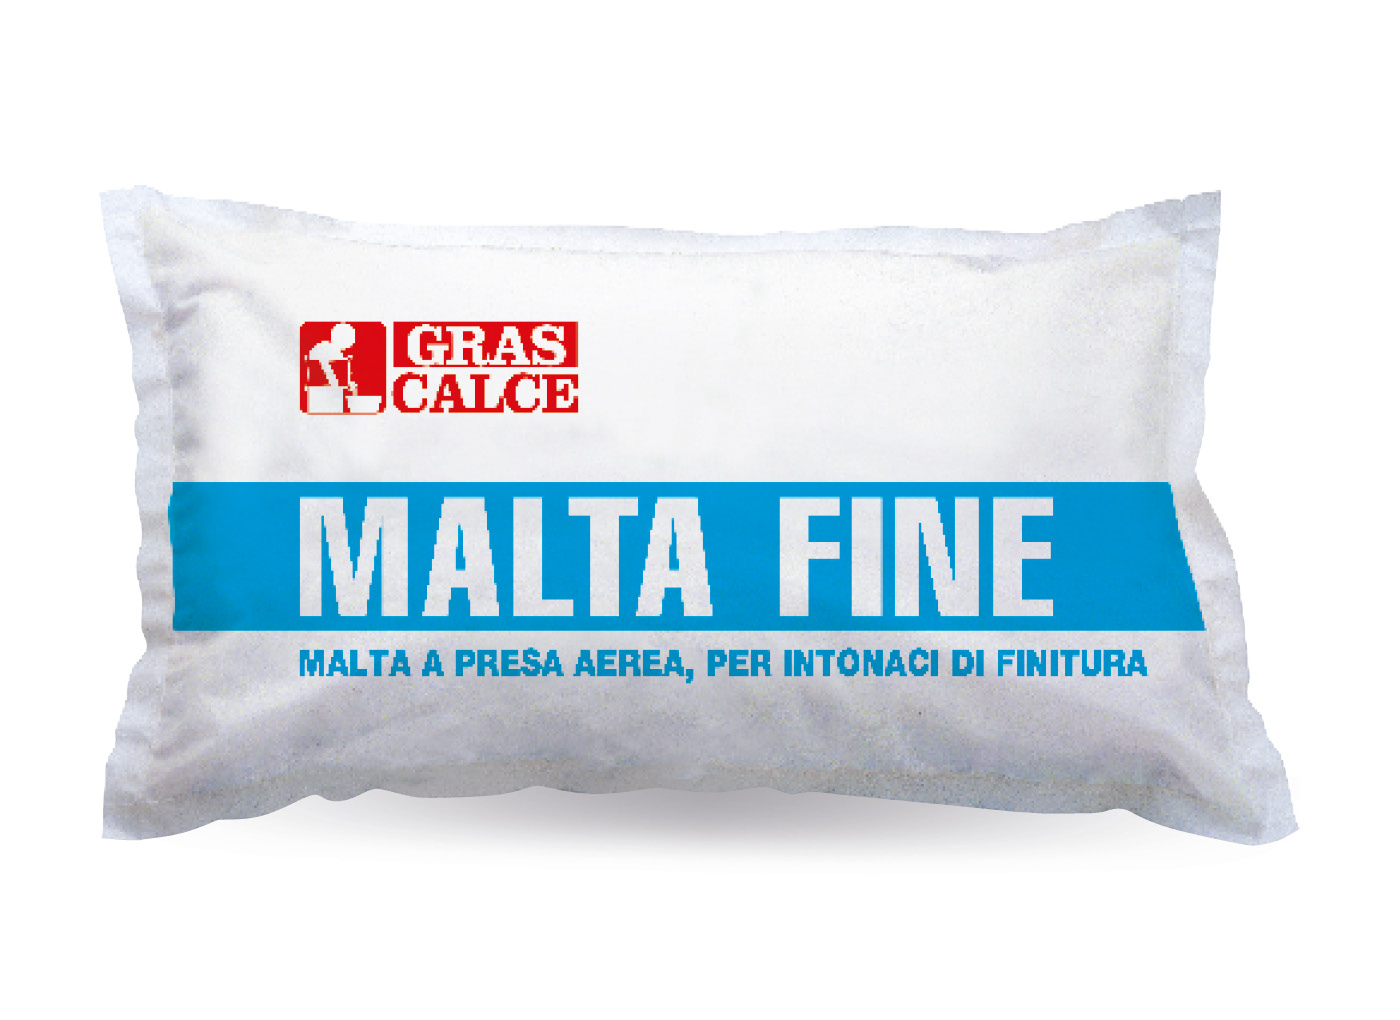 GrasCalce-malta-fine